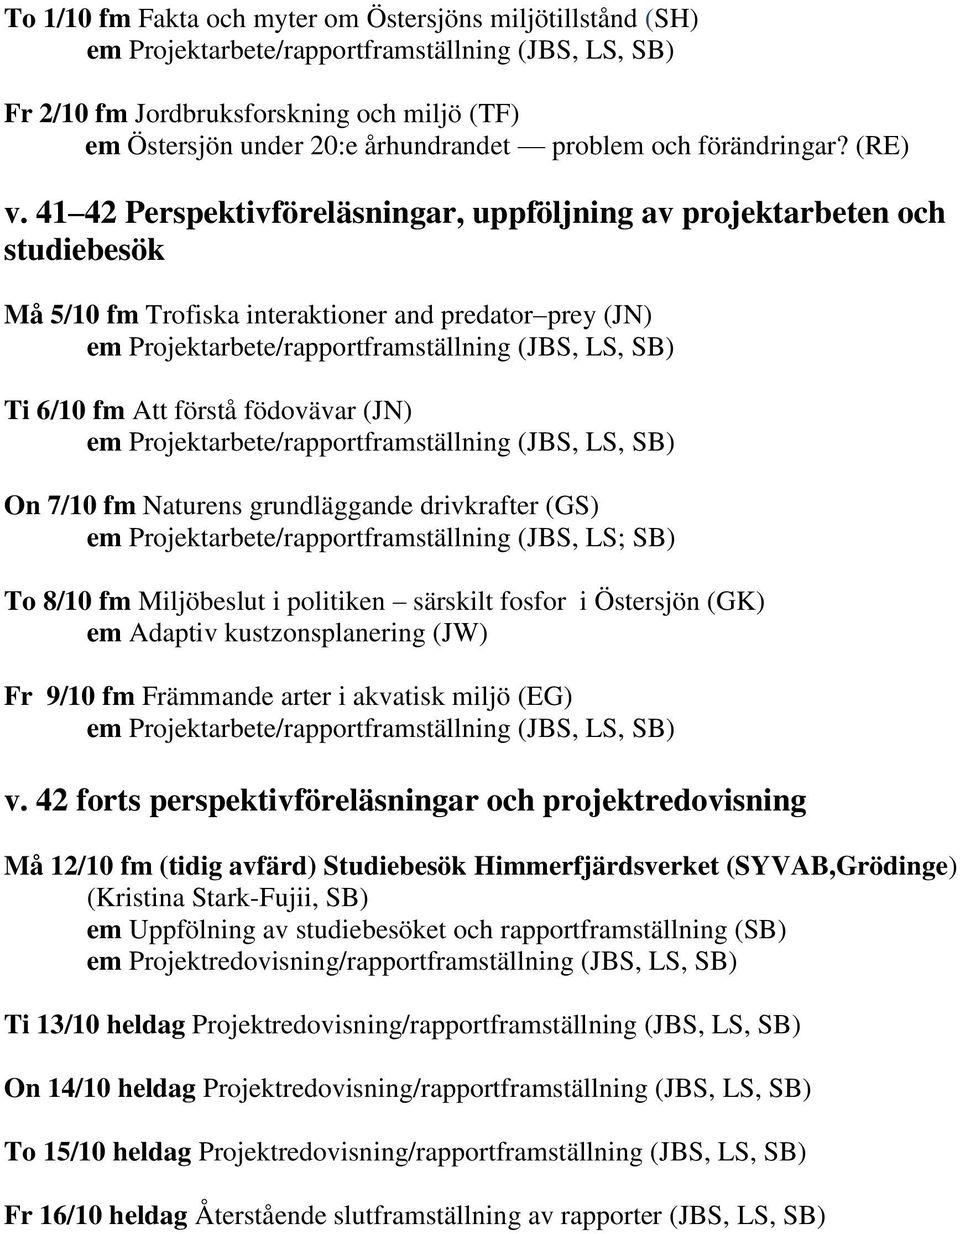 grundläggande drivkrafter (GS) em Projektarbete/rapportframställning (JBS, LS; SB) To 8/10 fm Miljöbeslut i politiken särskilt fosfor i Östersjön (GK) em Adaptiv kustzonsplanering (JW) Fr 9/10 fm